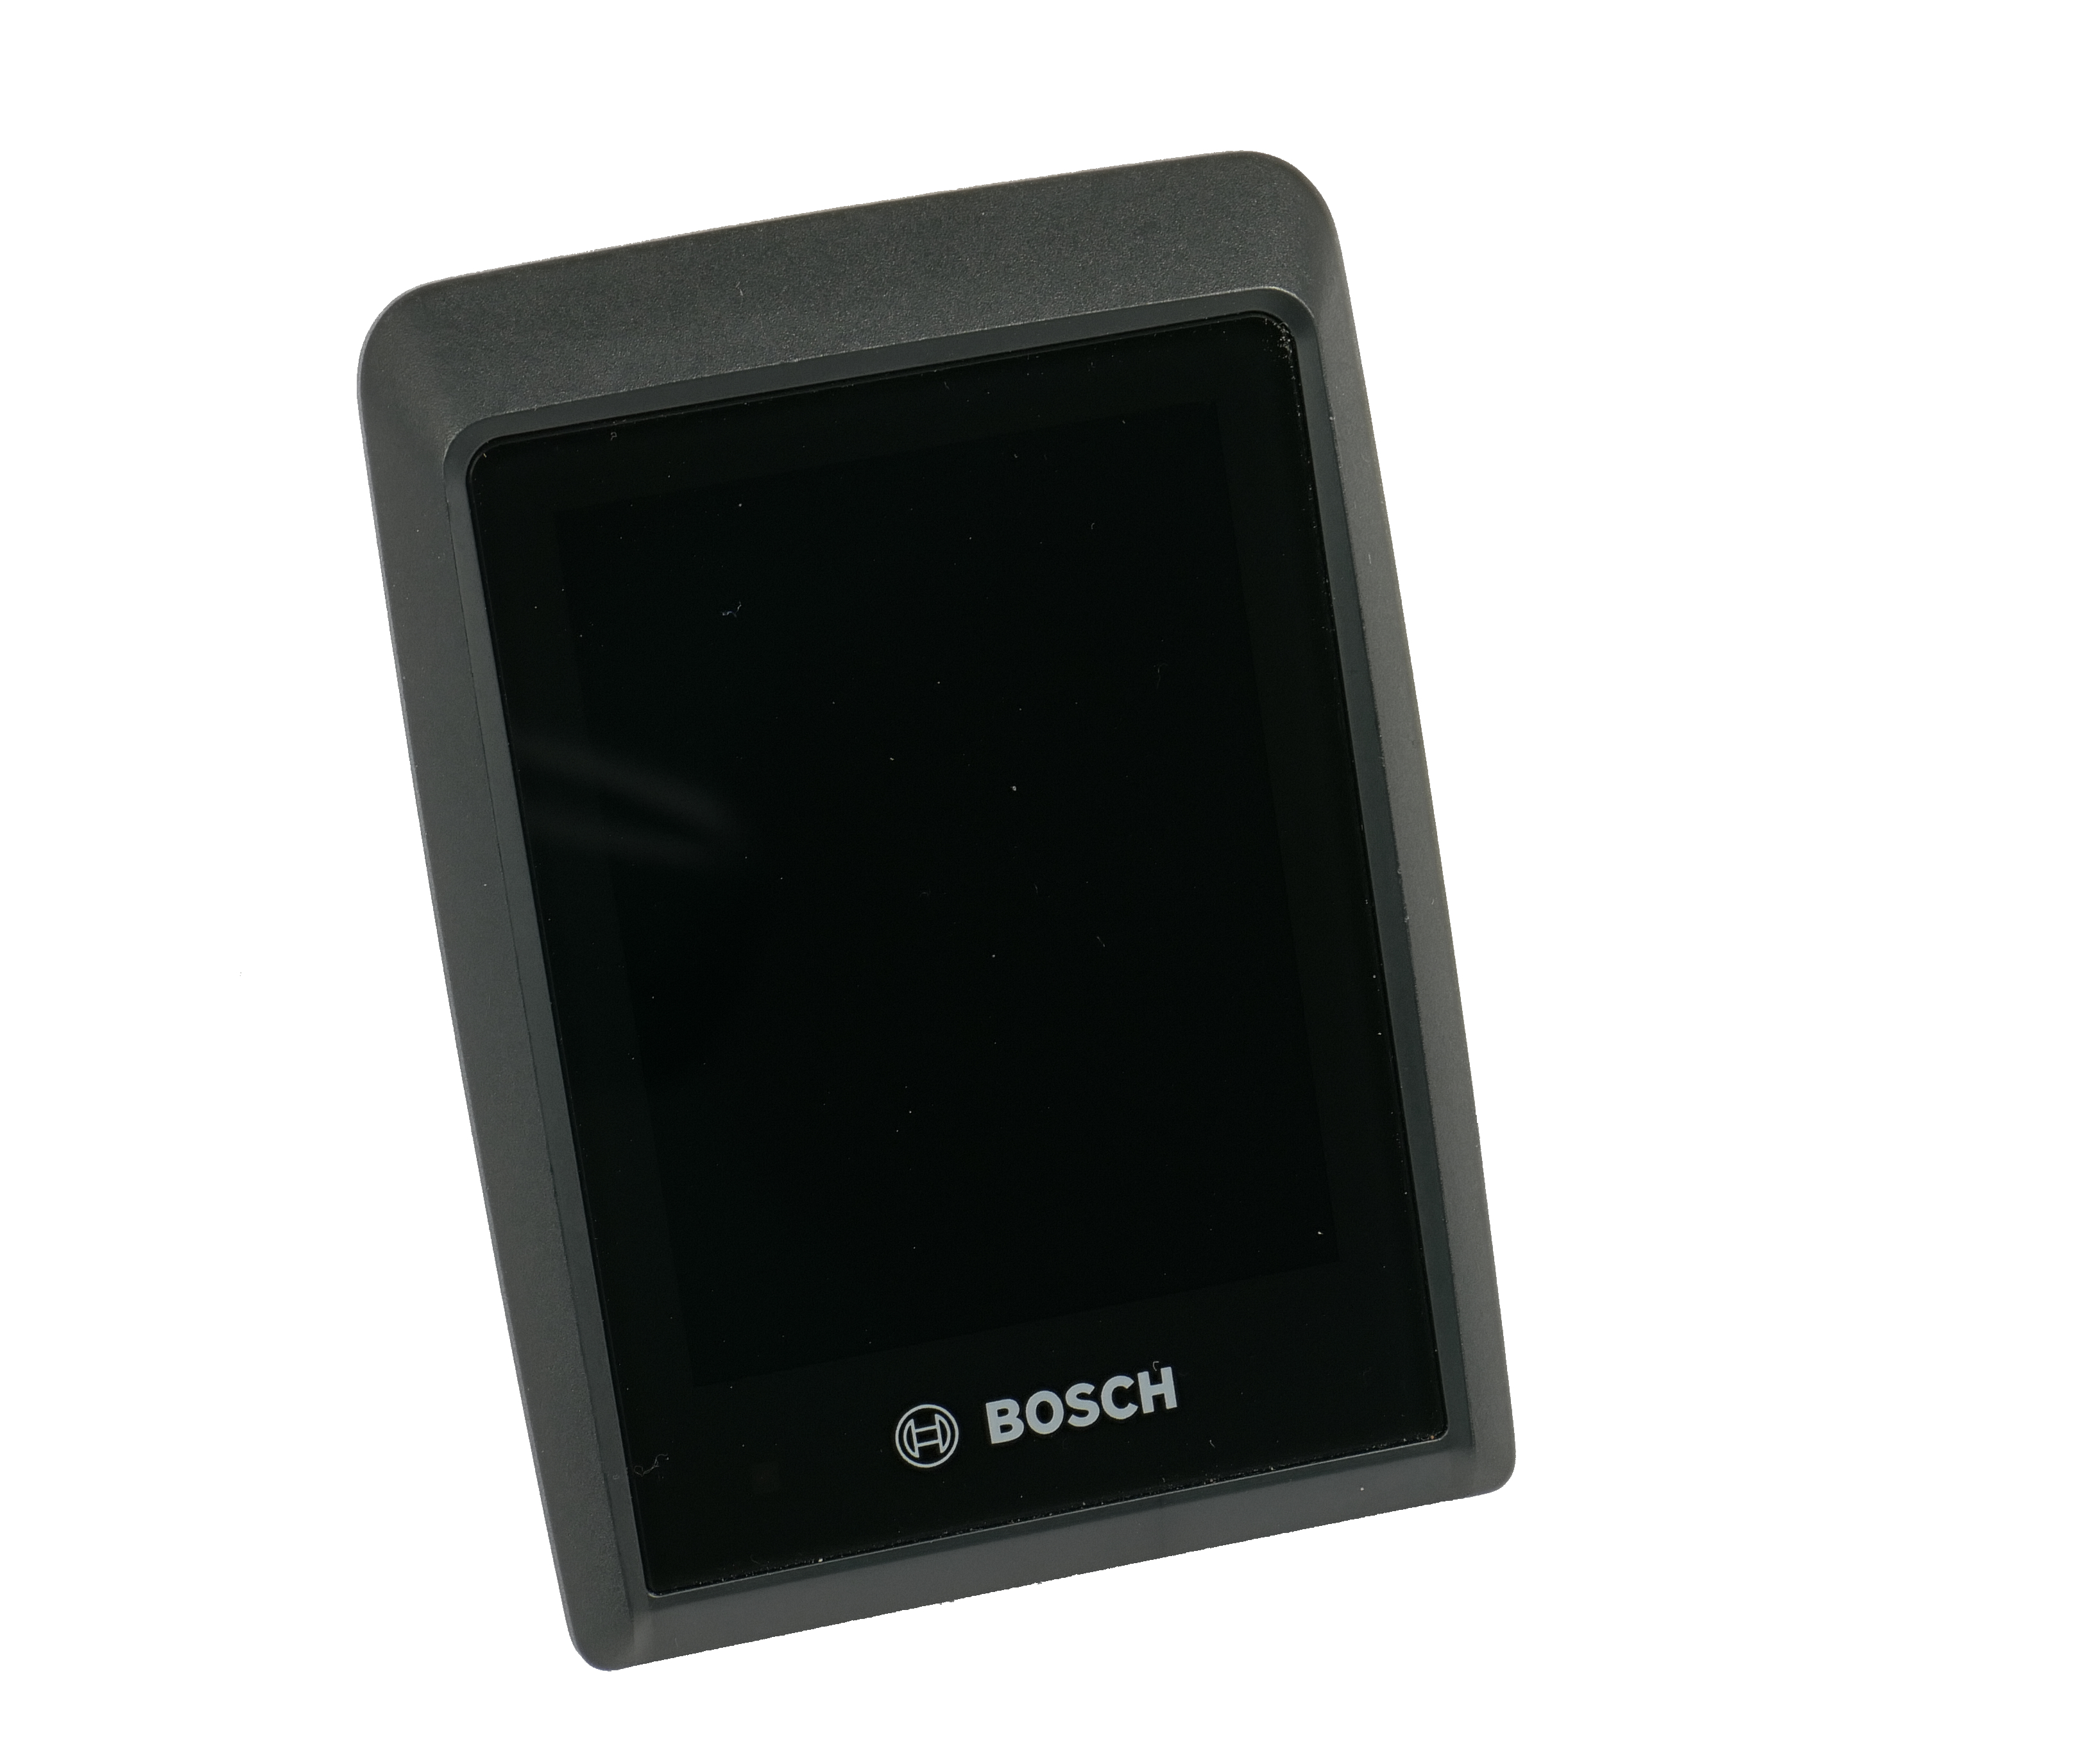 Más novedades Bosch: nuevo display Kiox 500, mando Purion 200